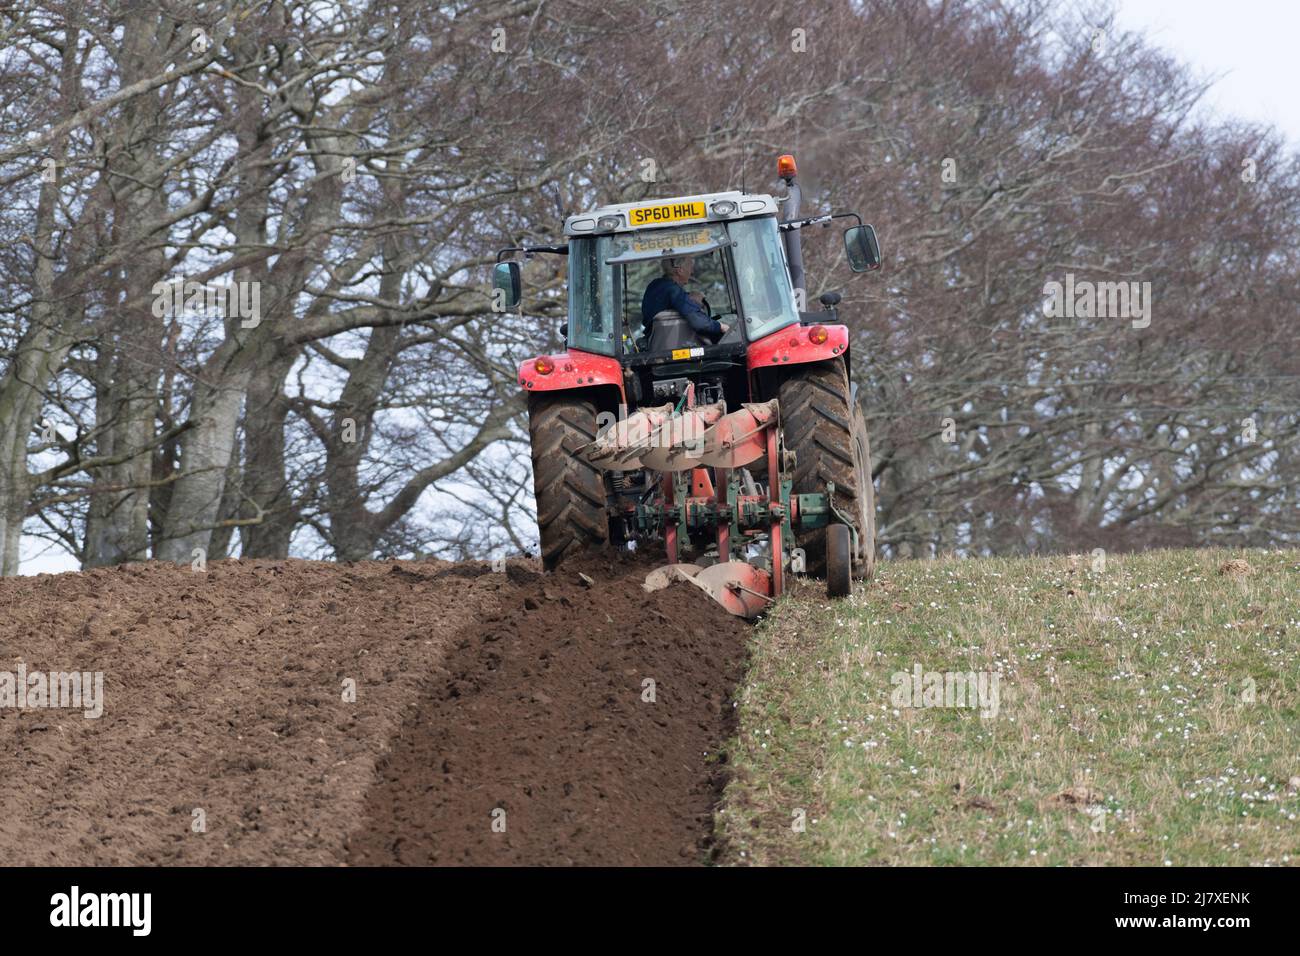 Un fermier labourant un champ Hillside lors d'une journée découverte dans la campagne écossaise Banque D'Images